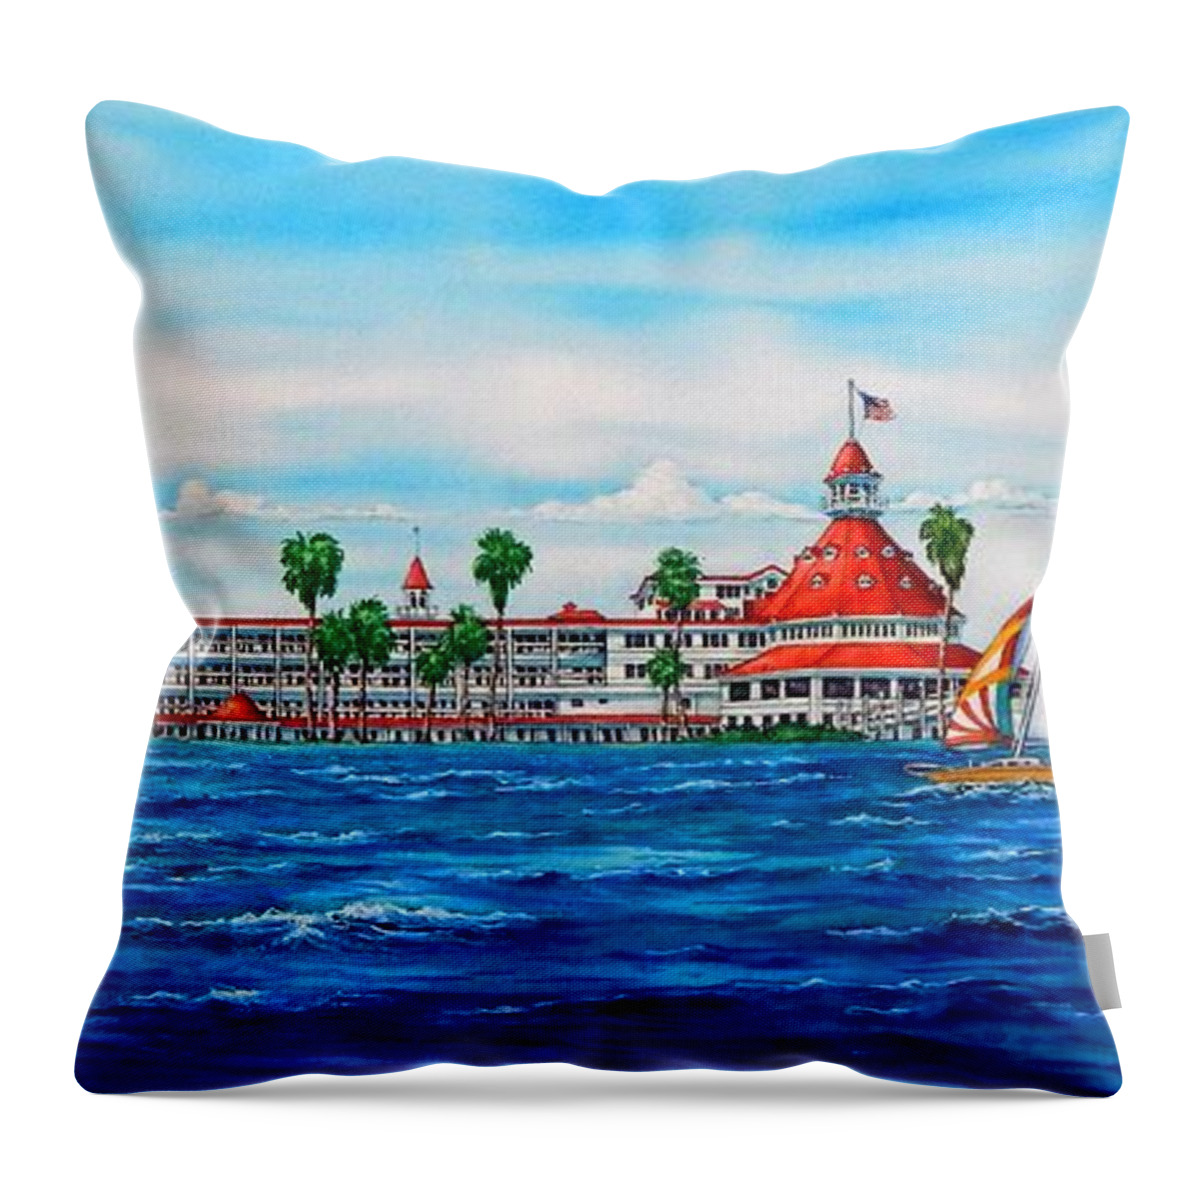 Del Throw Pillow featuring the painting HOTEL DEL CORONADO, Sailing over Hotel Del Coronado by John YATO